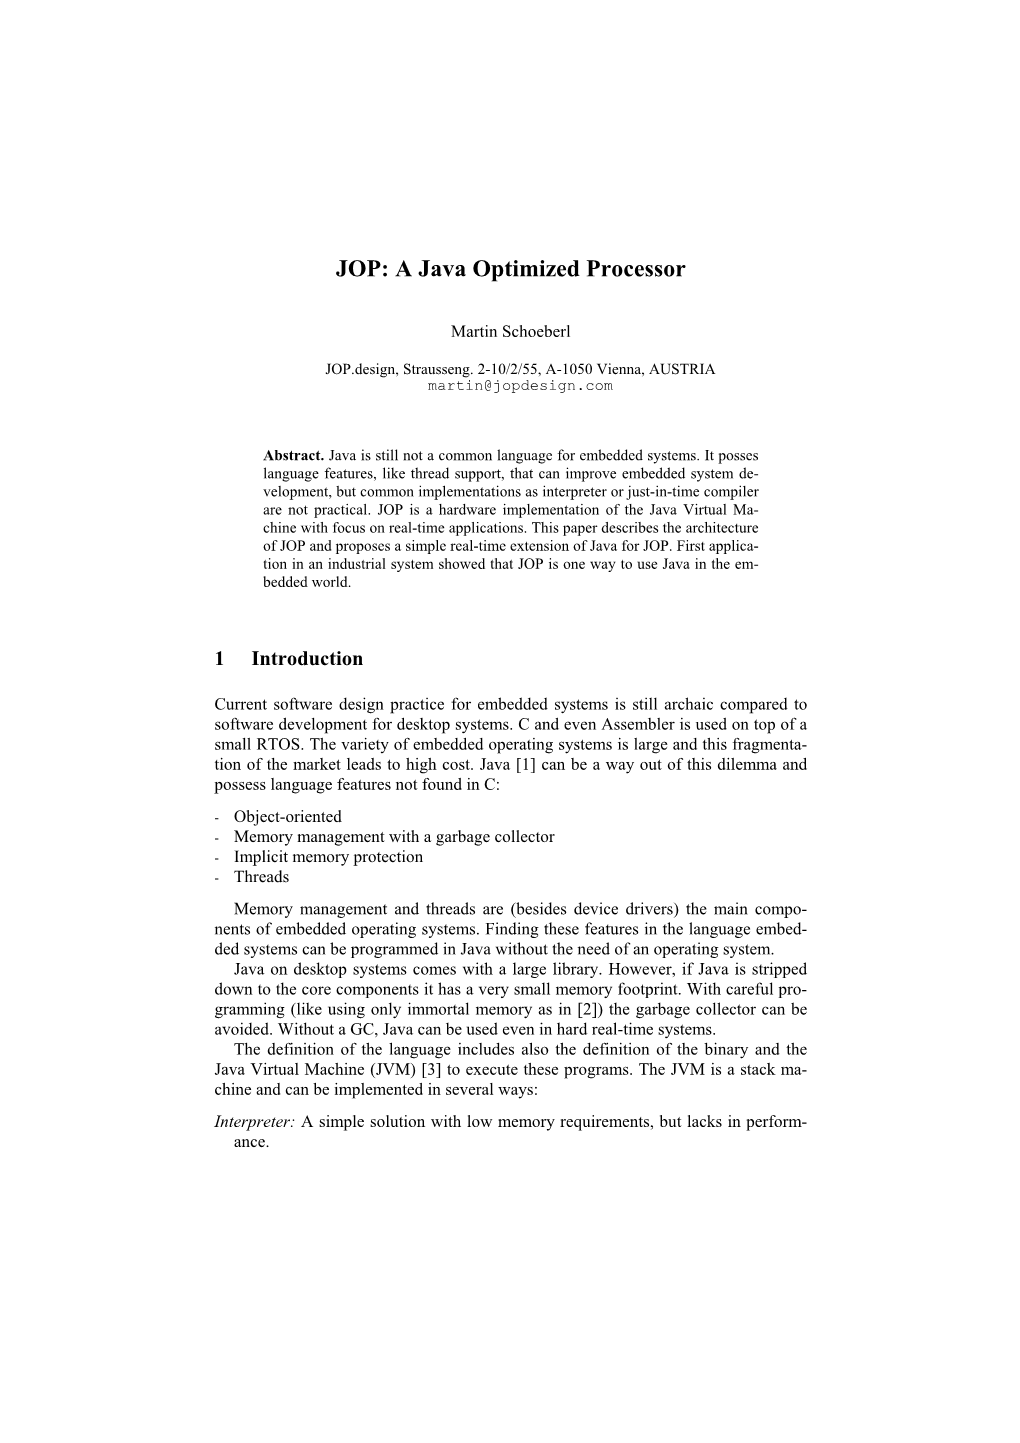 JOP: a Java Optimized Processor